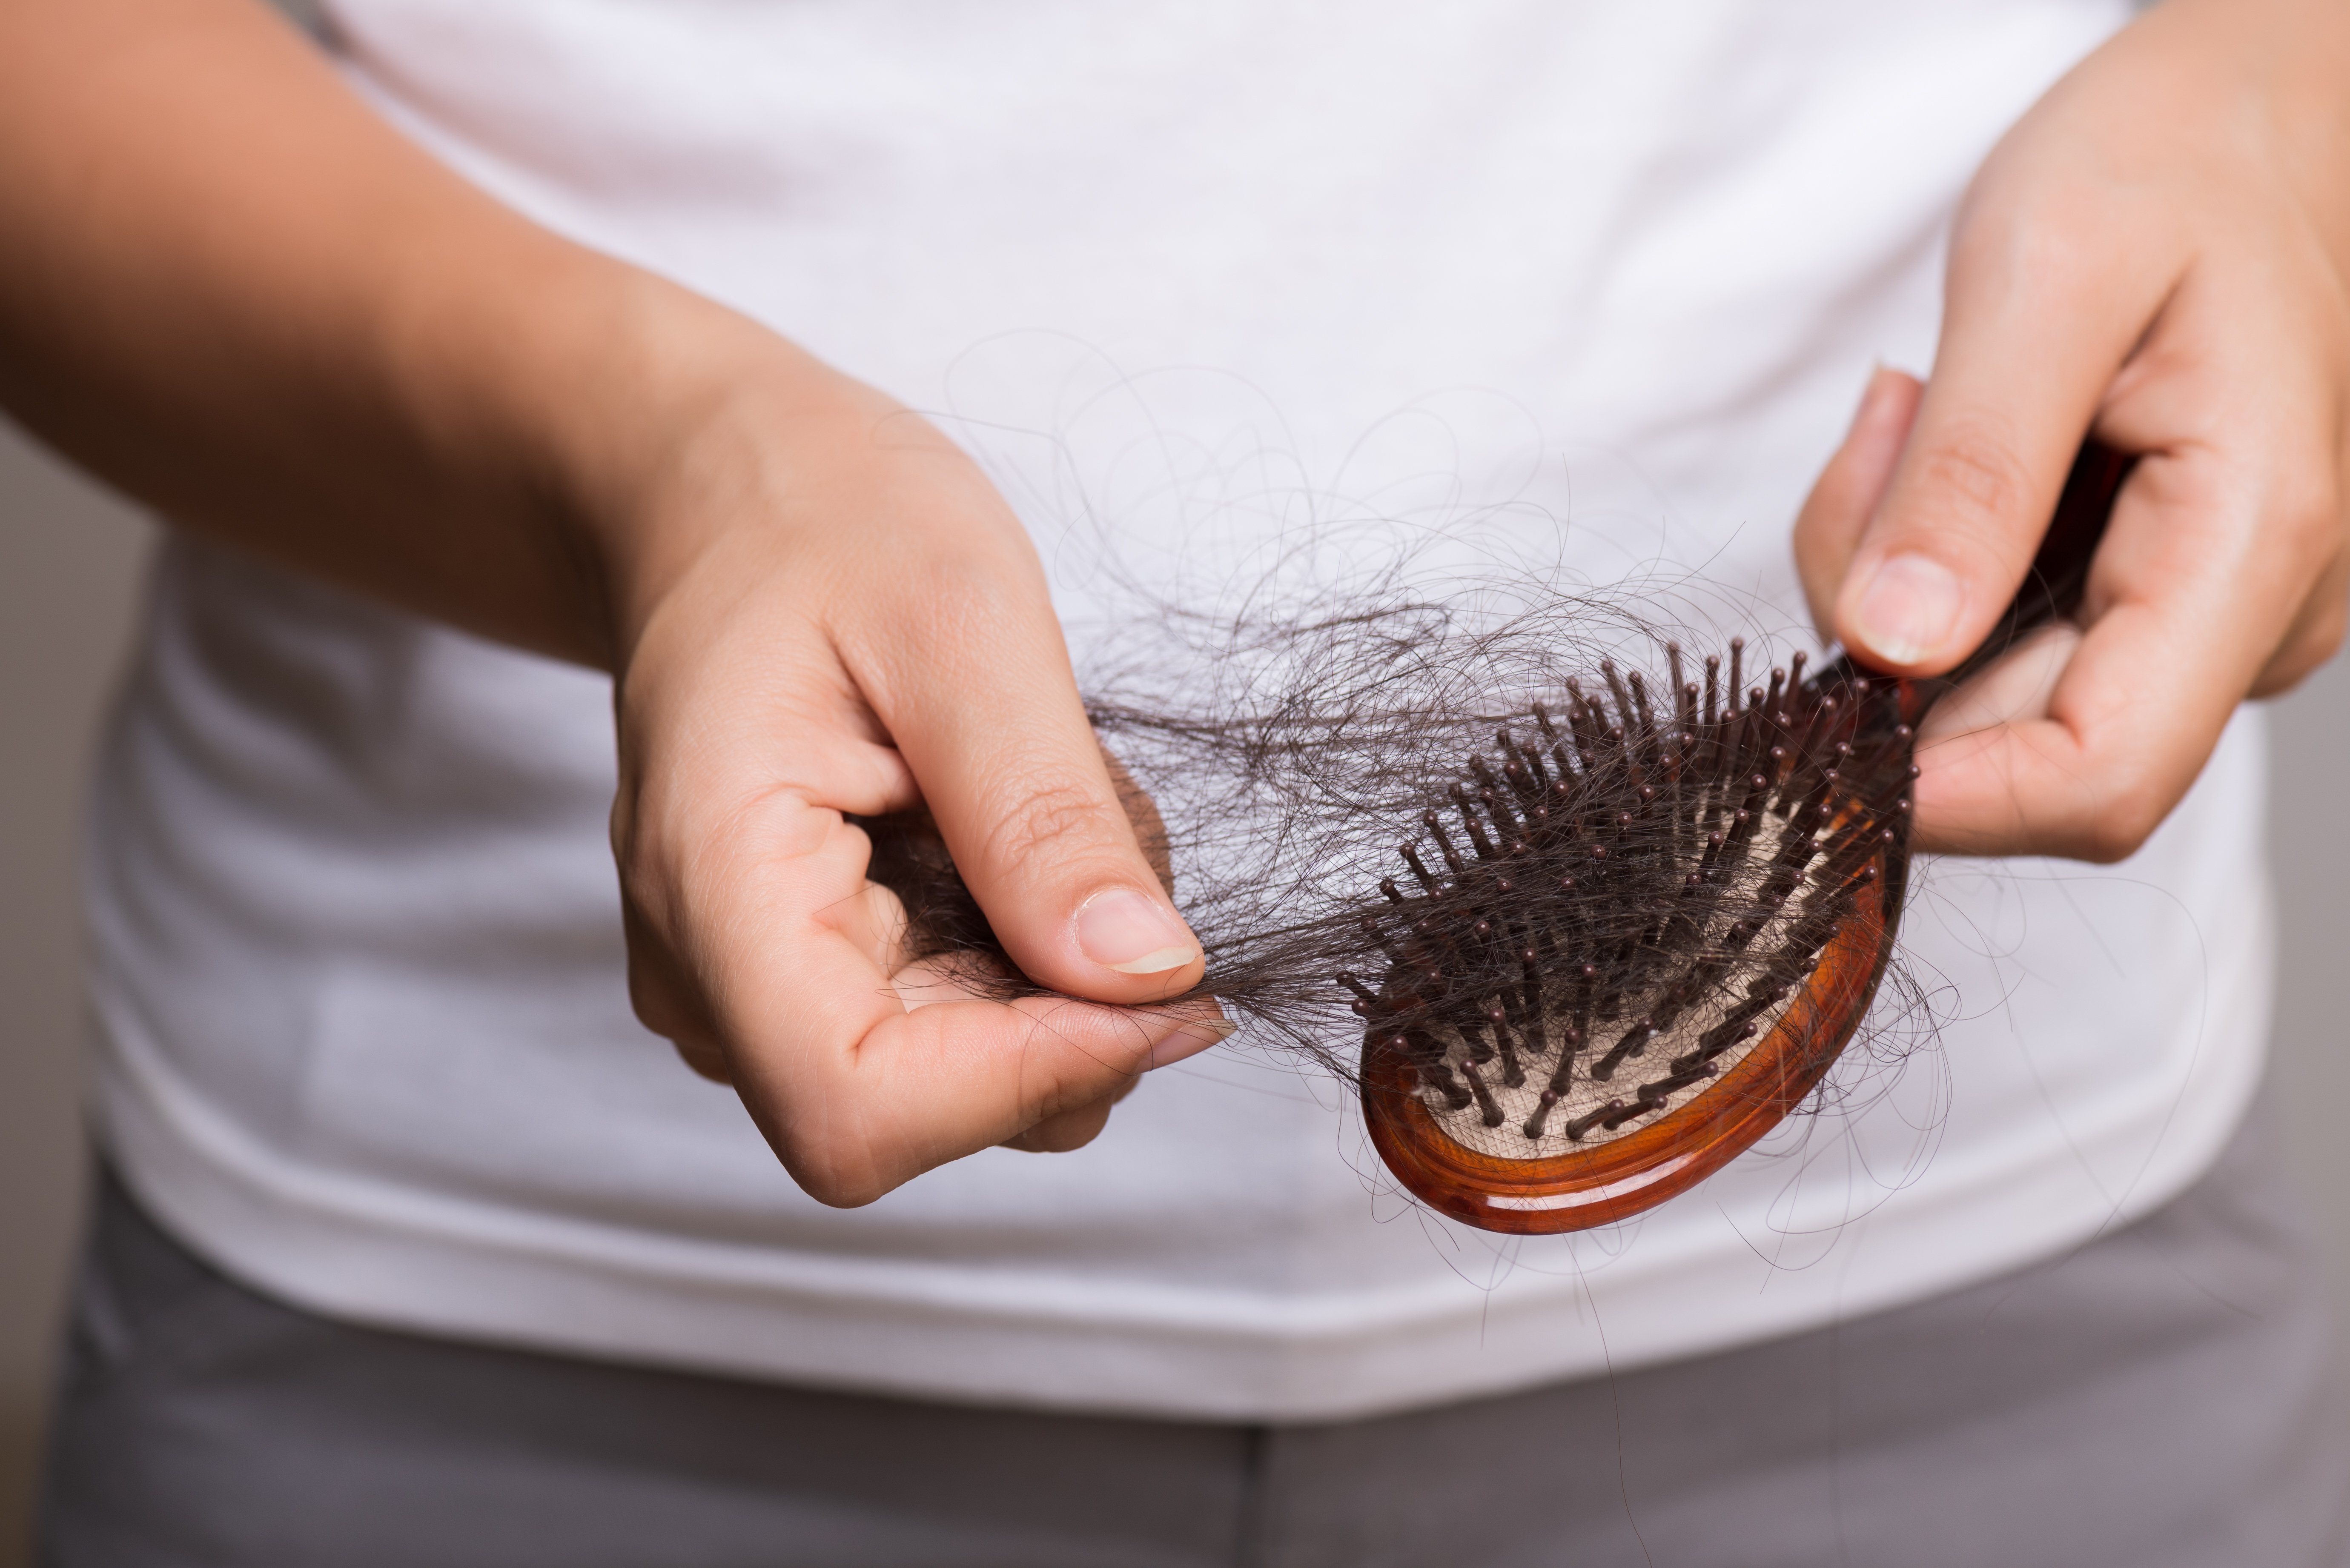 Frau zupft Haare von Bürste | Quelle: Shutterstock